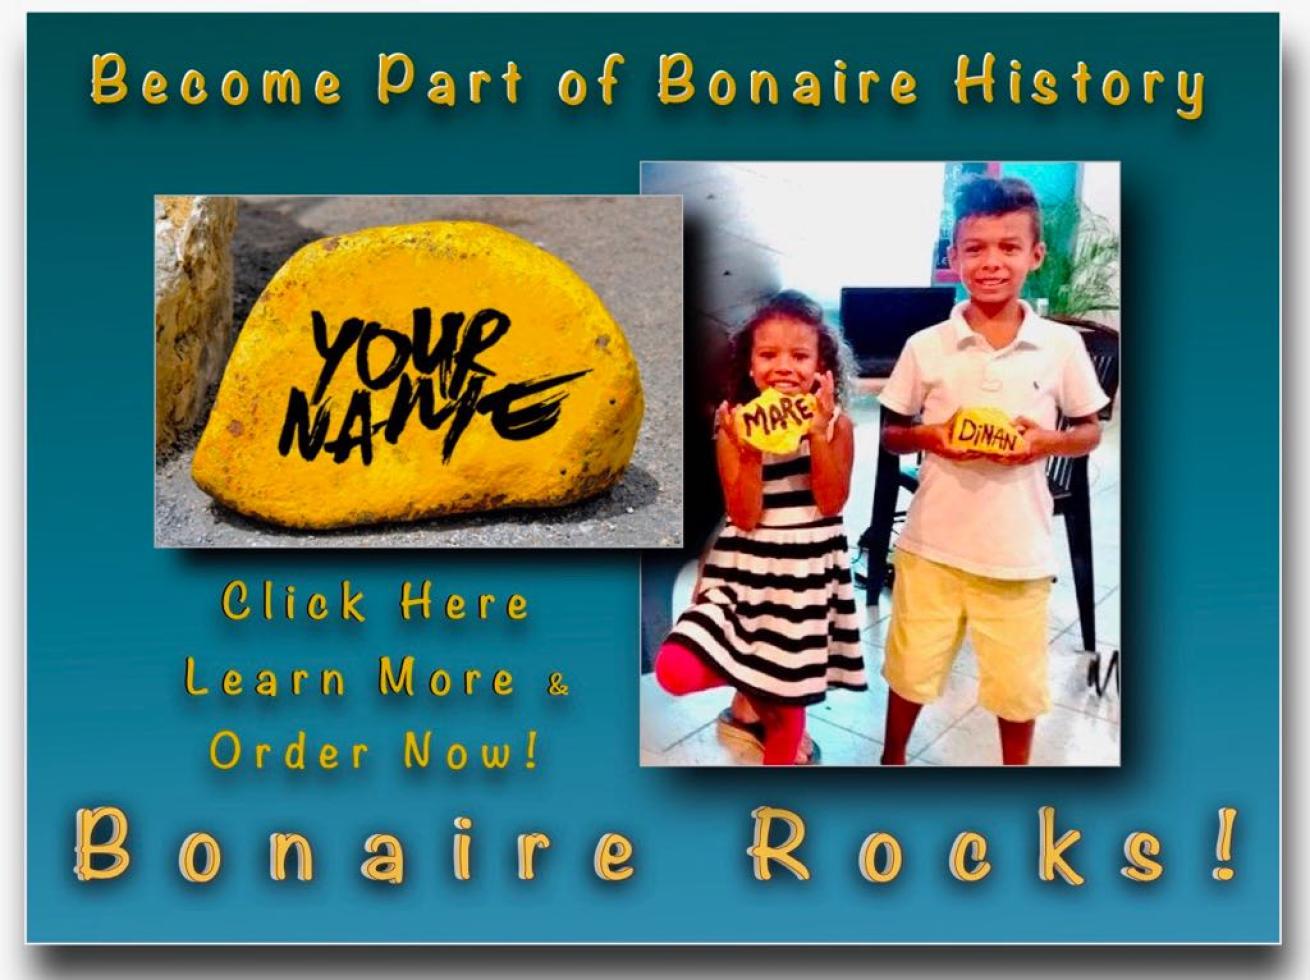 Bonaire Rock Sculpture